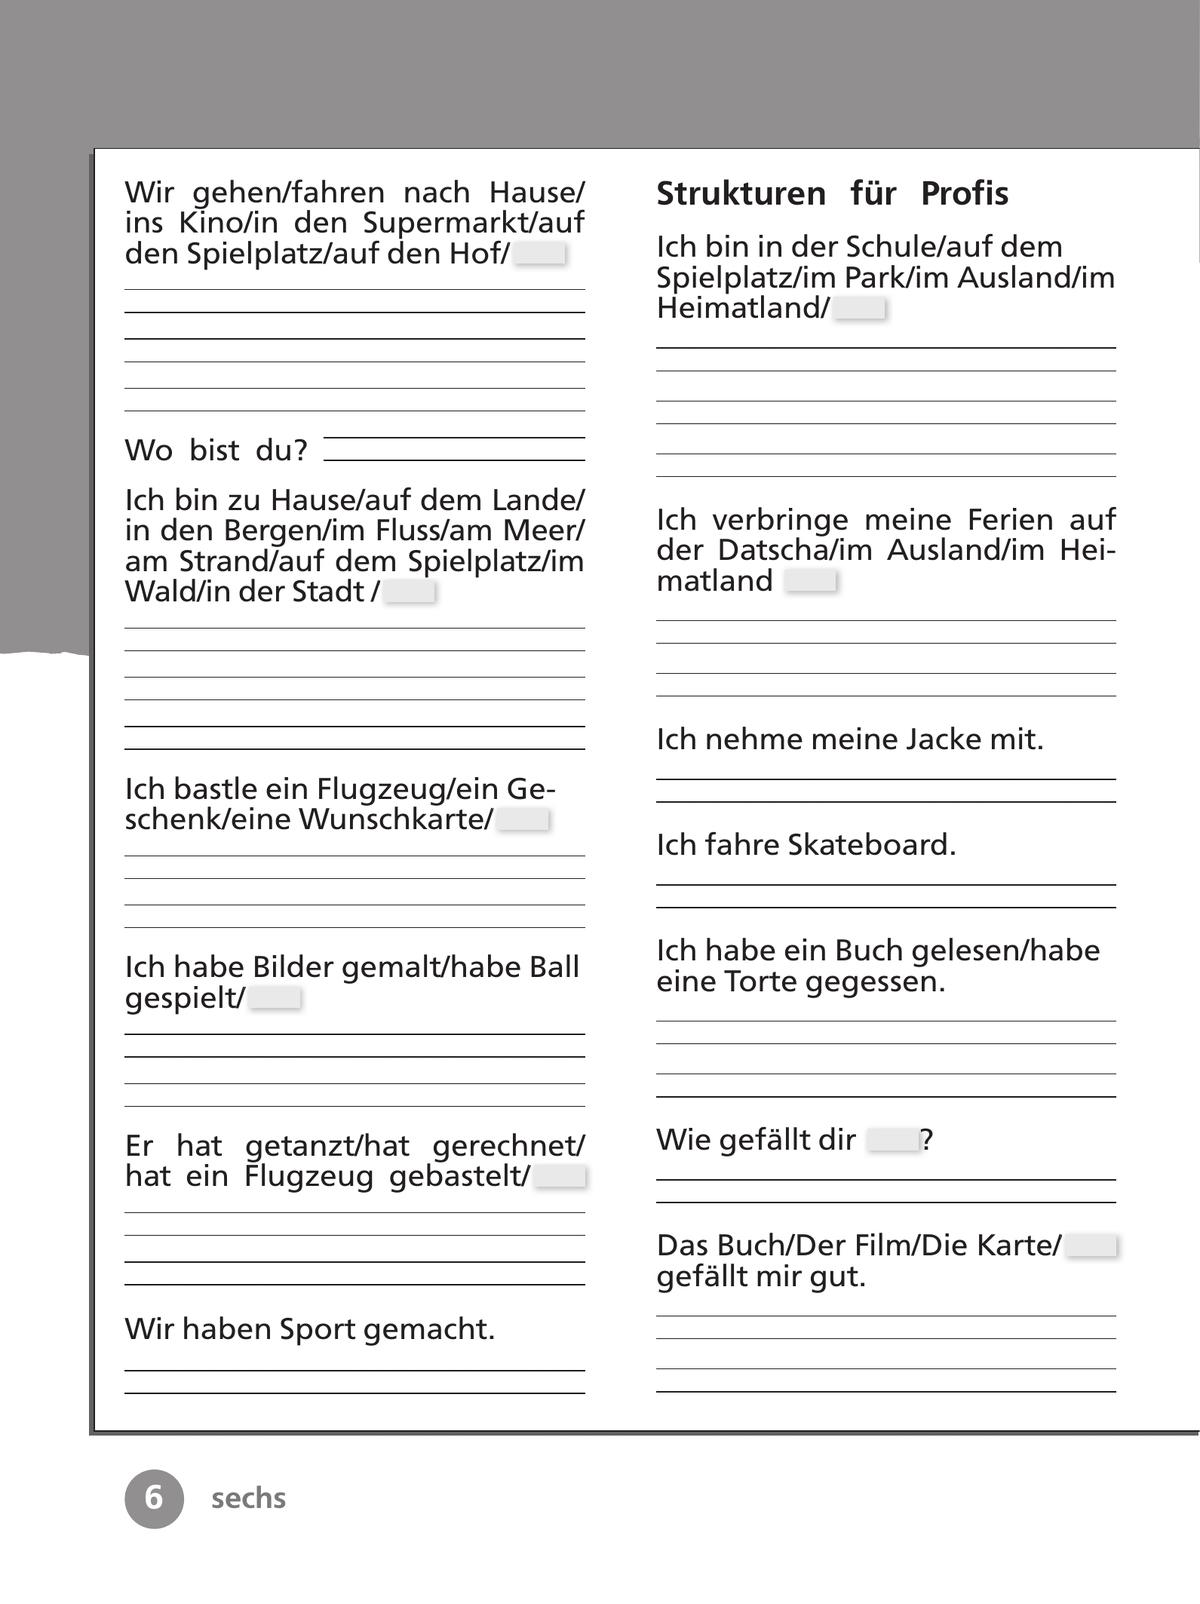 Немецкий язык. Рабочая тетрадь. 3 класс. В 2 ч. Часть 1 11